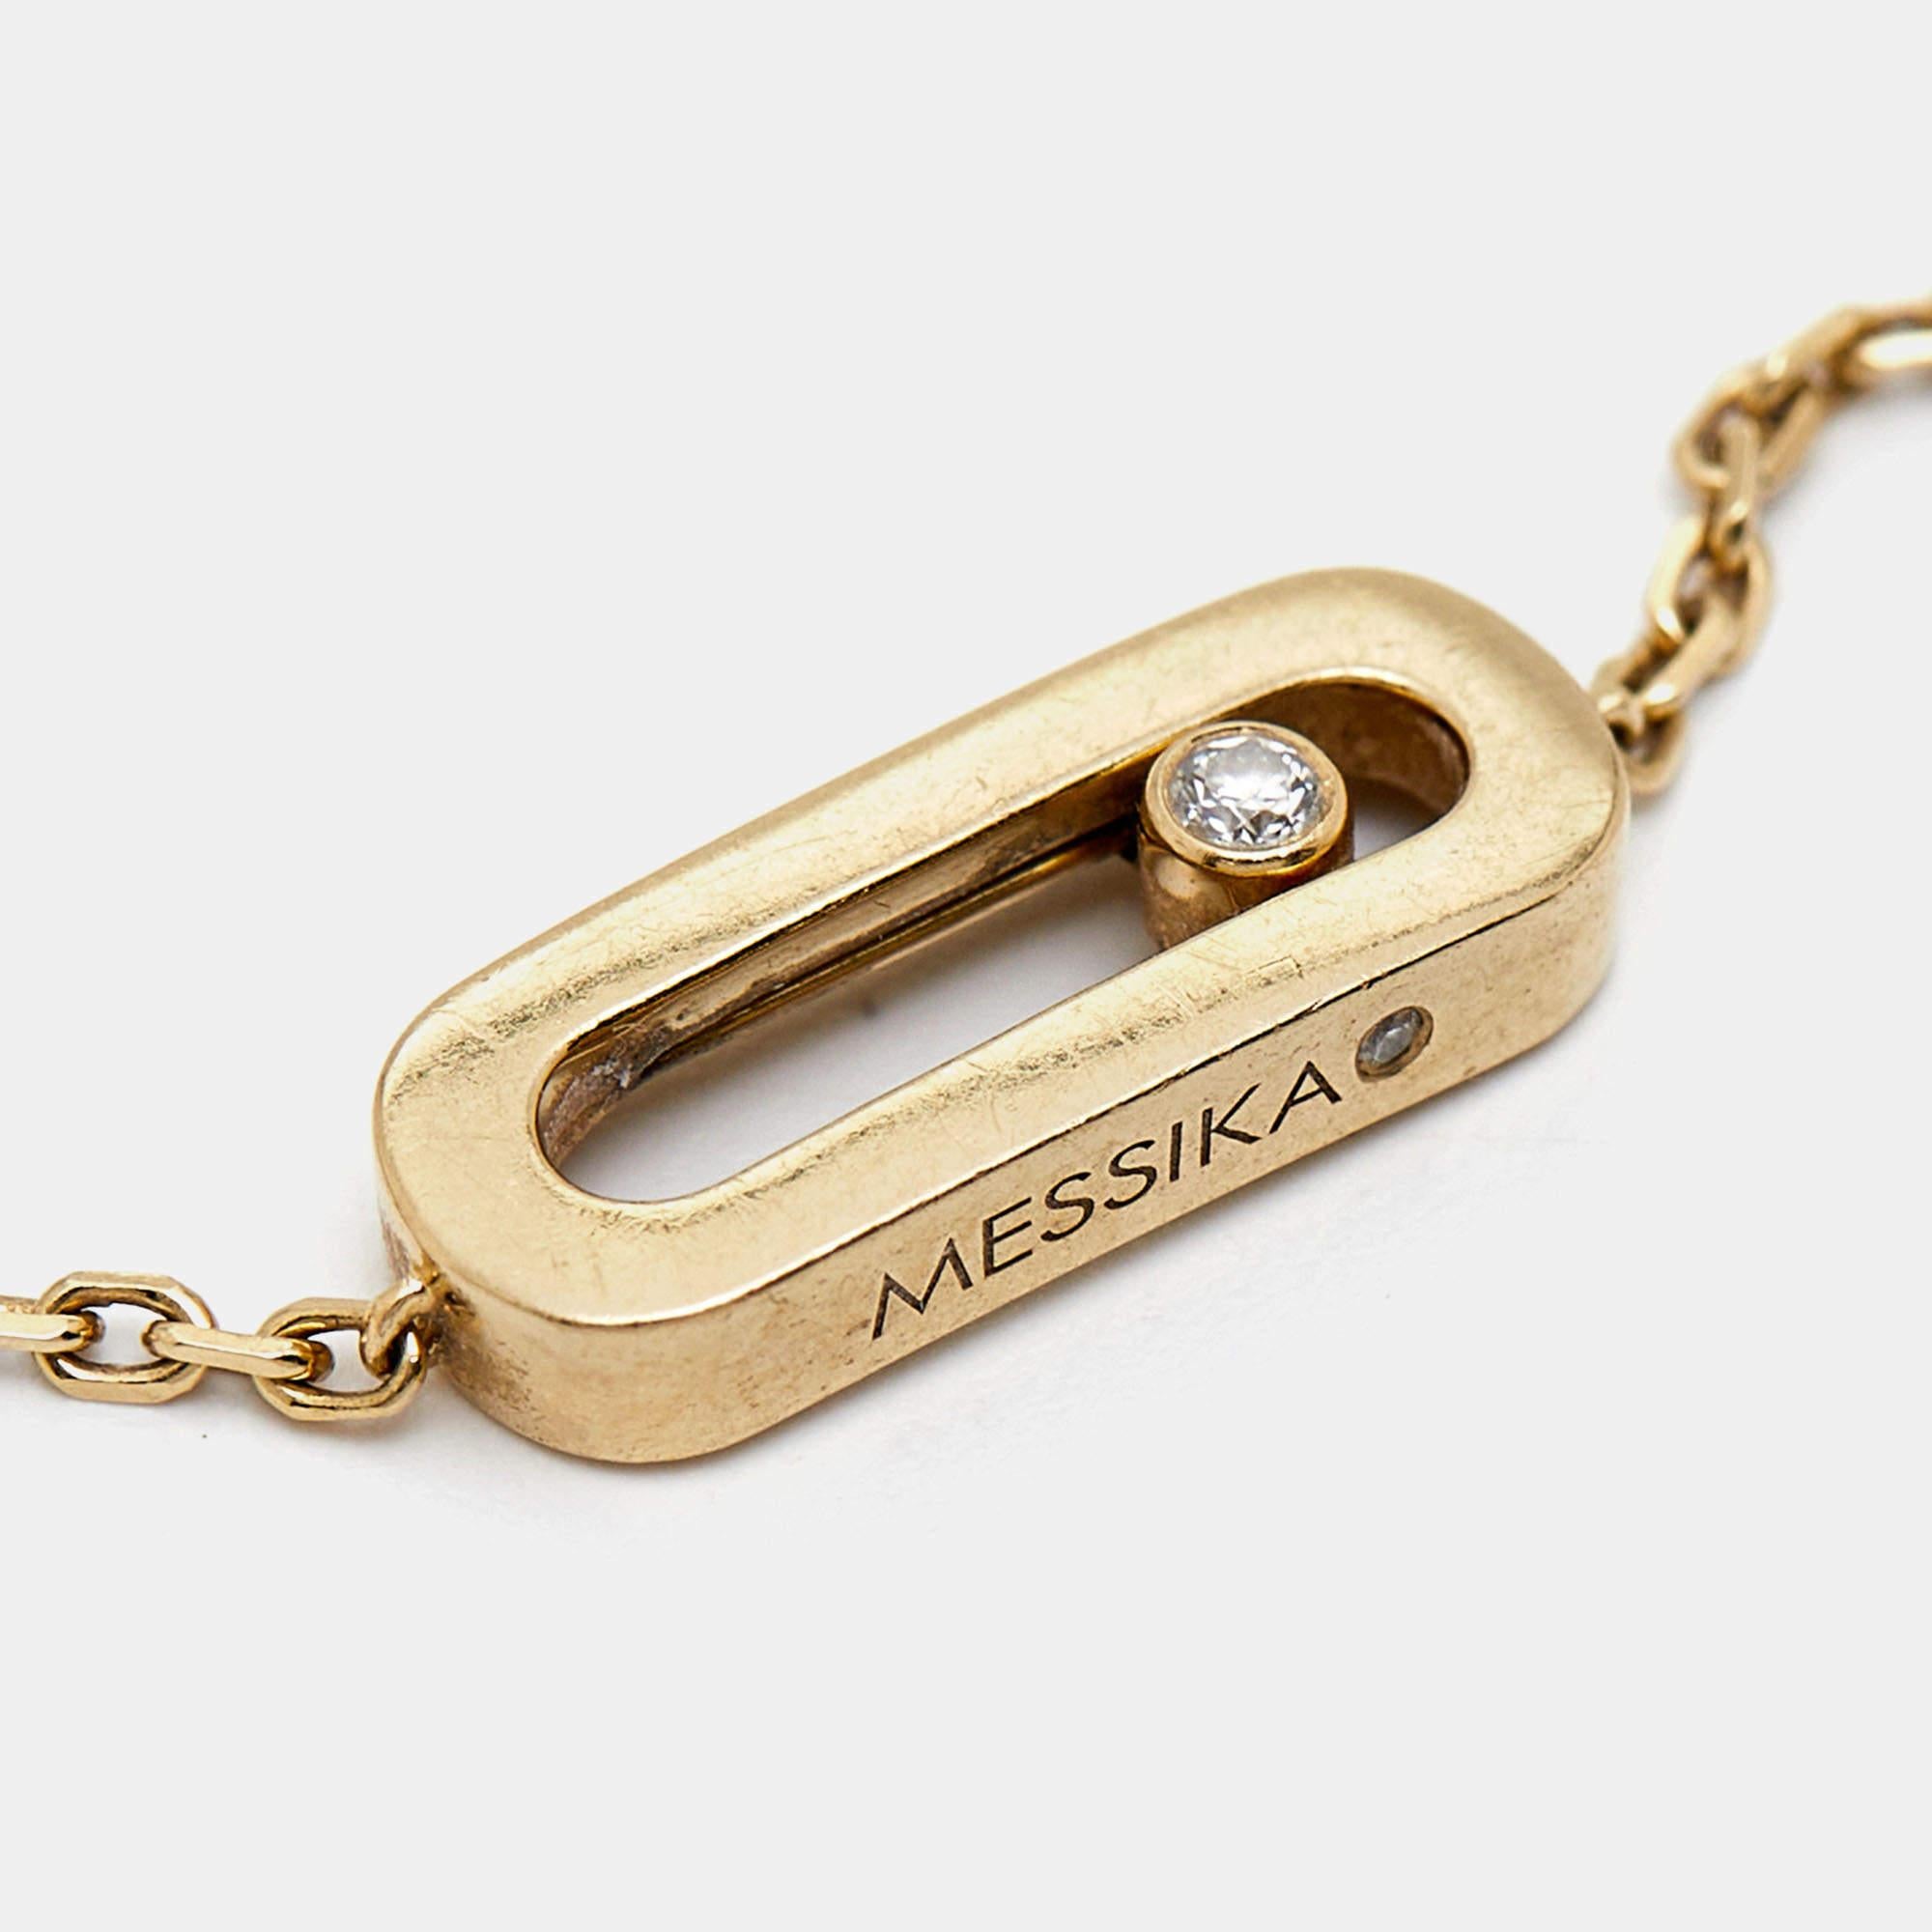 Das mit exquisiter Präzision gefertigte Messika Move Uno Armband strahlt in allen Facetten Opulenz aus. Schimmerndes 18-karätiges Gelbgold formt seine anmutige Silhouette, die mit einem einzigen schillernden Diamanten geschmückt ist, der bei jeder